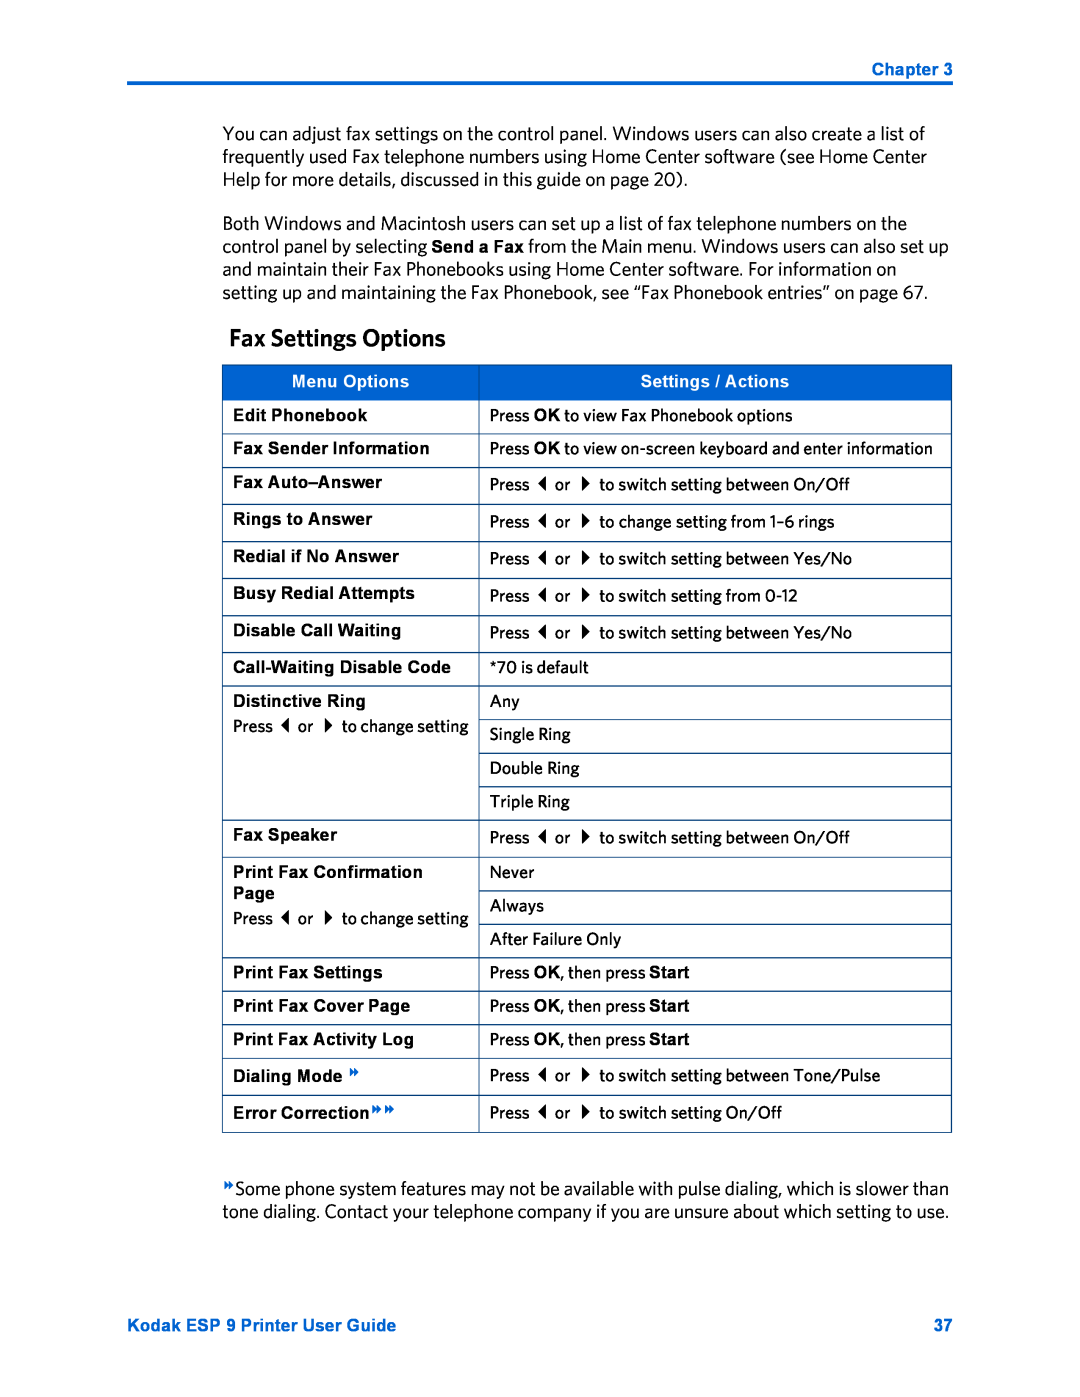 Kodak manual Fax Settings Options, Chapter, Menu Options, Settings / Actions, Kodak ESP 9 Printer User Guide 